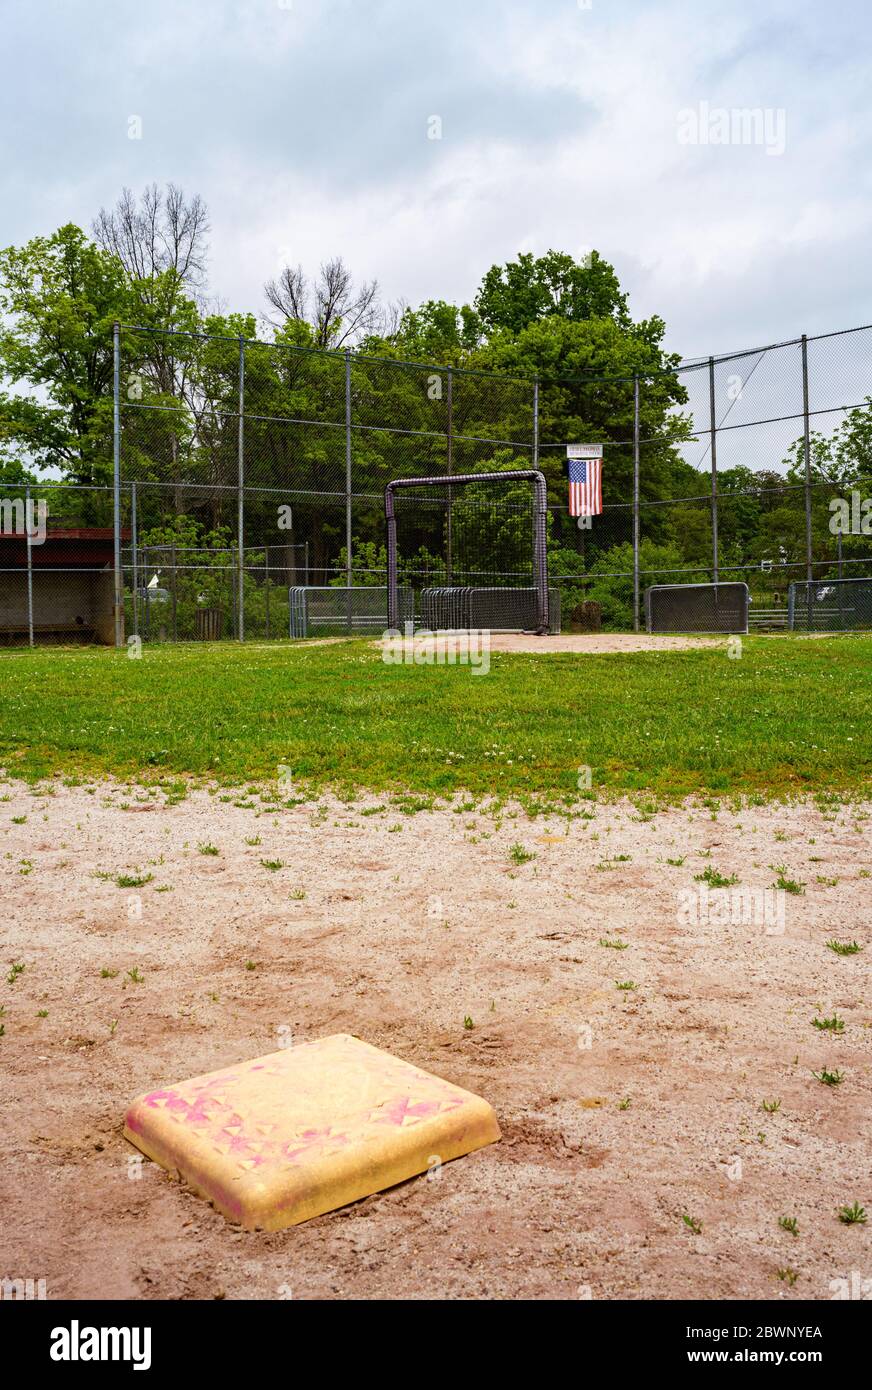 Mt. Kisco, New York le 29 mai 2020 : bien que le comté de Westchester, qui fait partie de la région du centre de l'Hudson, juste au nord de New York, ait commencé la phase 1 de la réouverture après la pandémie du coronavirus cette semaine, les terrains de baseball tels que David L. Feldman Memorial Field restent fermés en raison du besoin continu de distanciation sociale. Banque D'Images